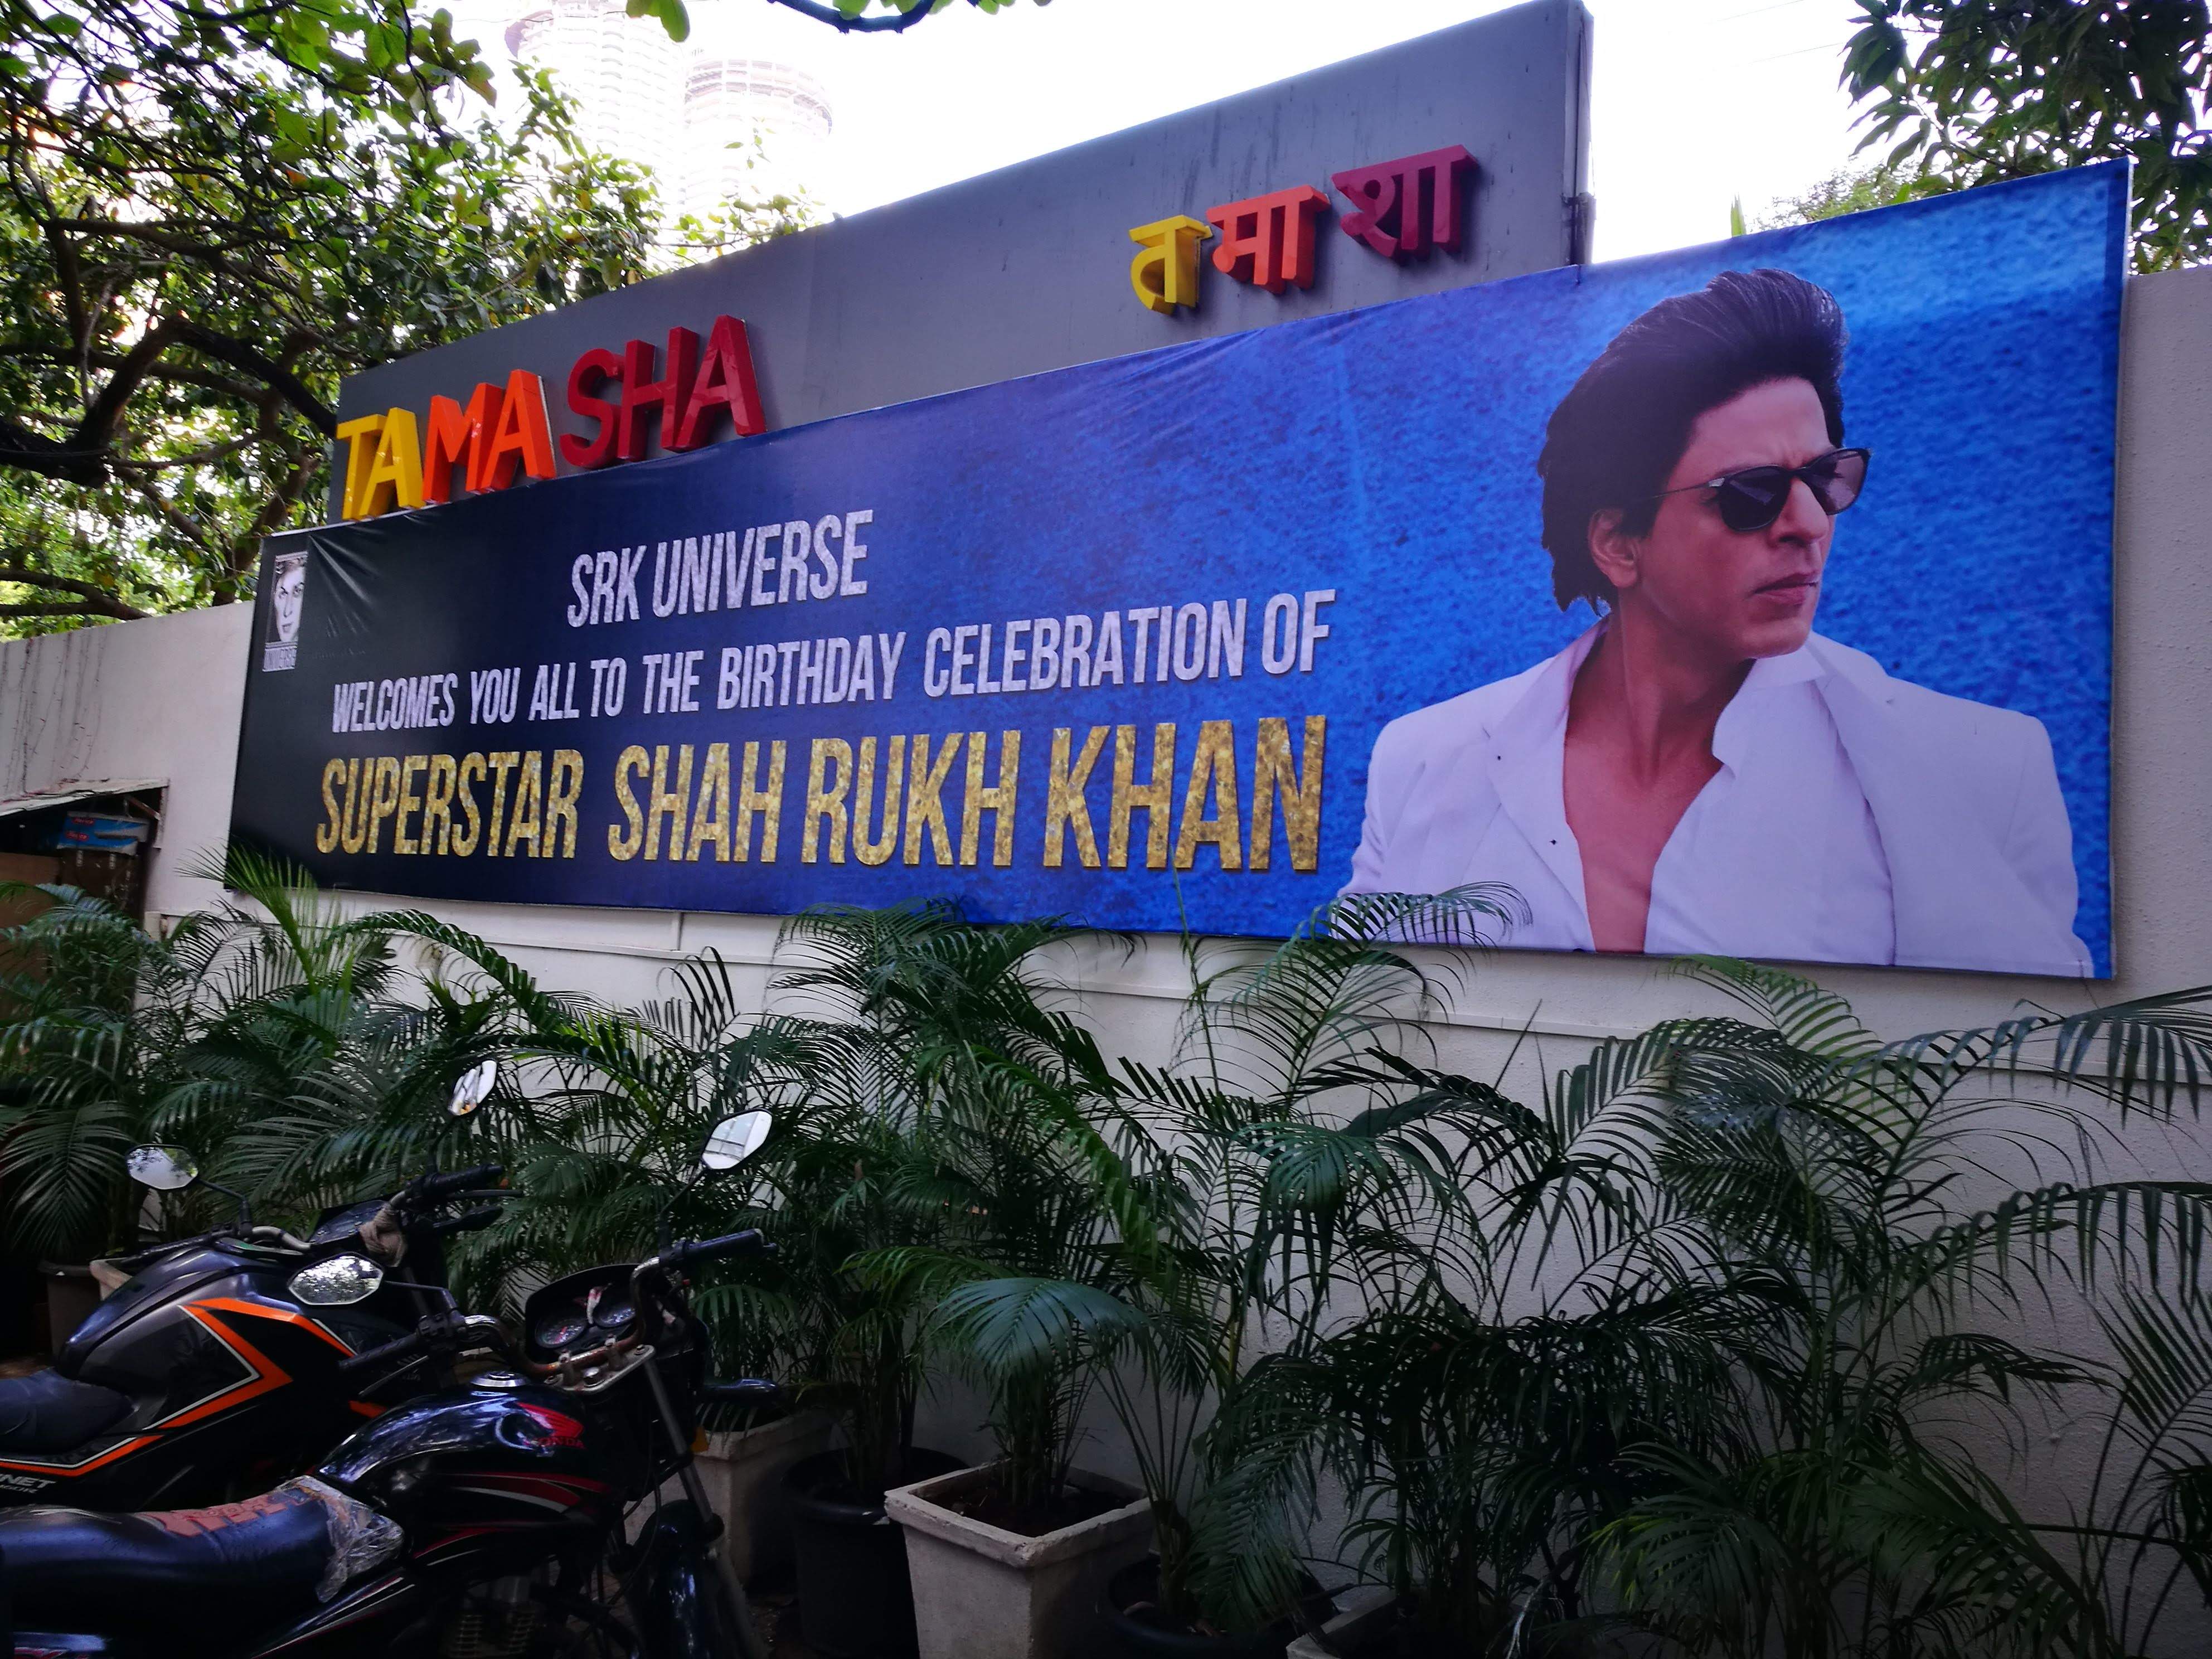 So wurden wir am Morgen vor dem TAMASHA von SRK Universe begrüsst...